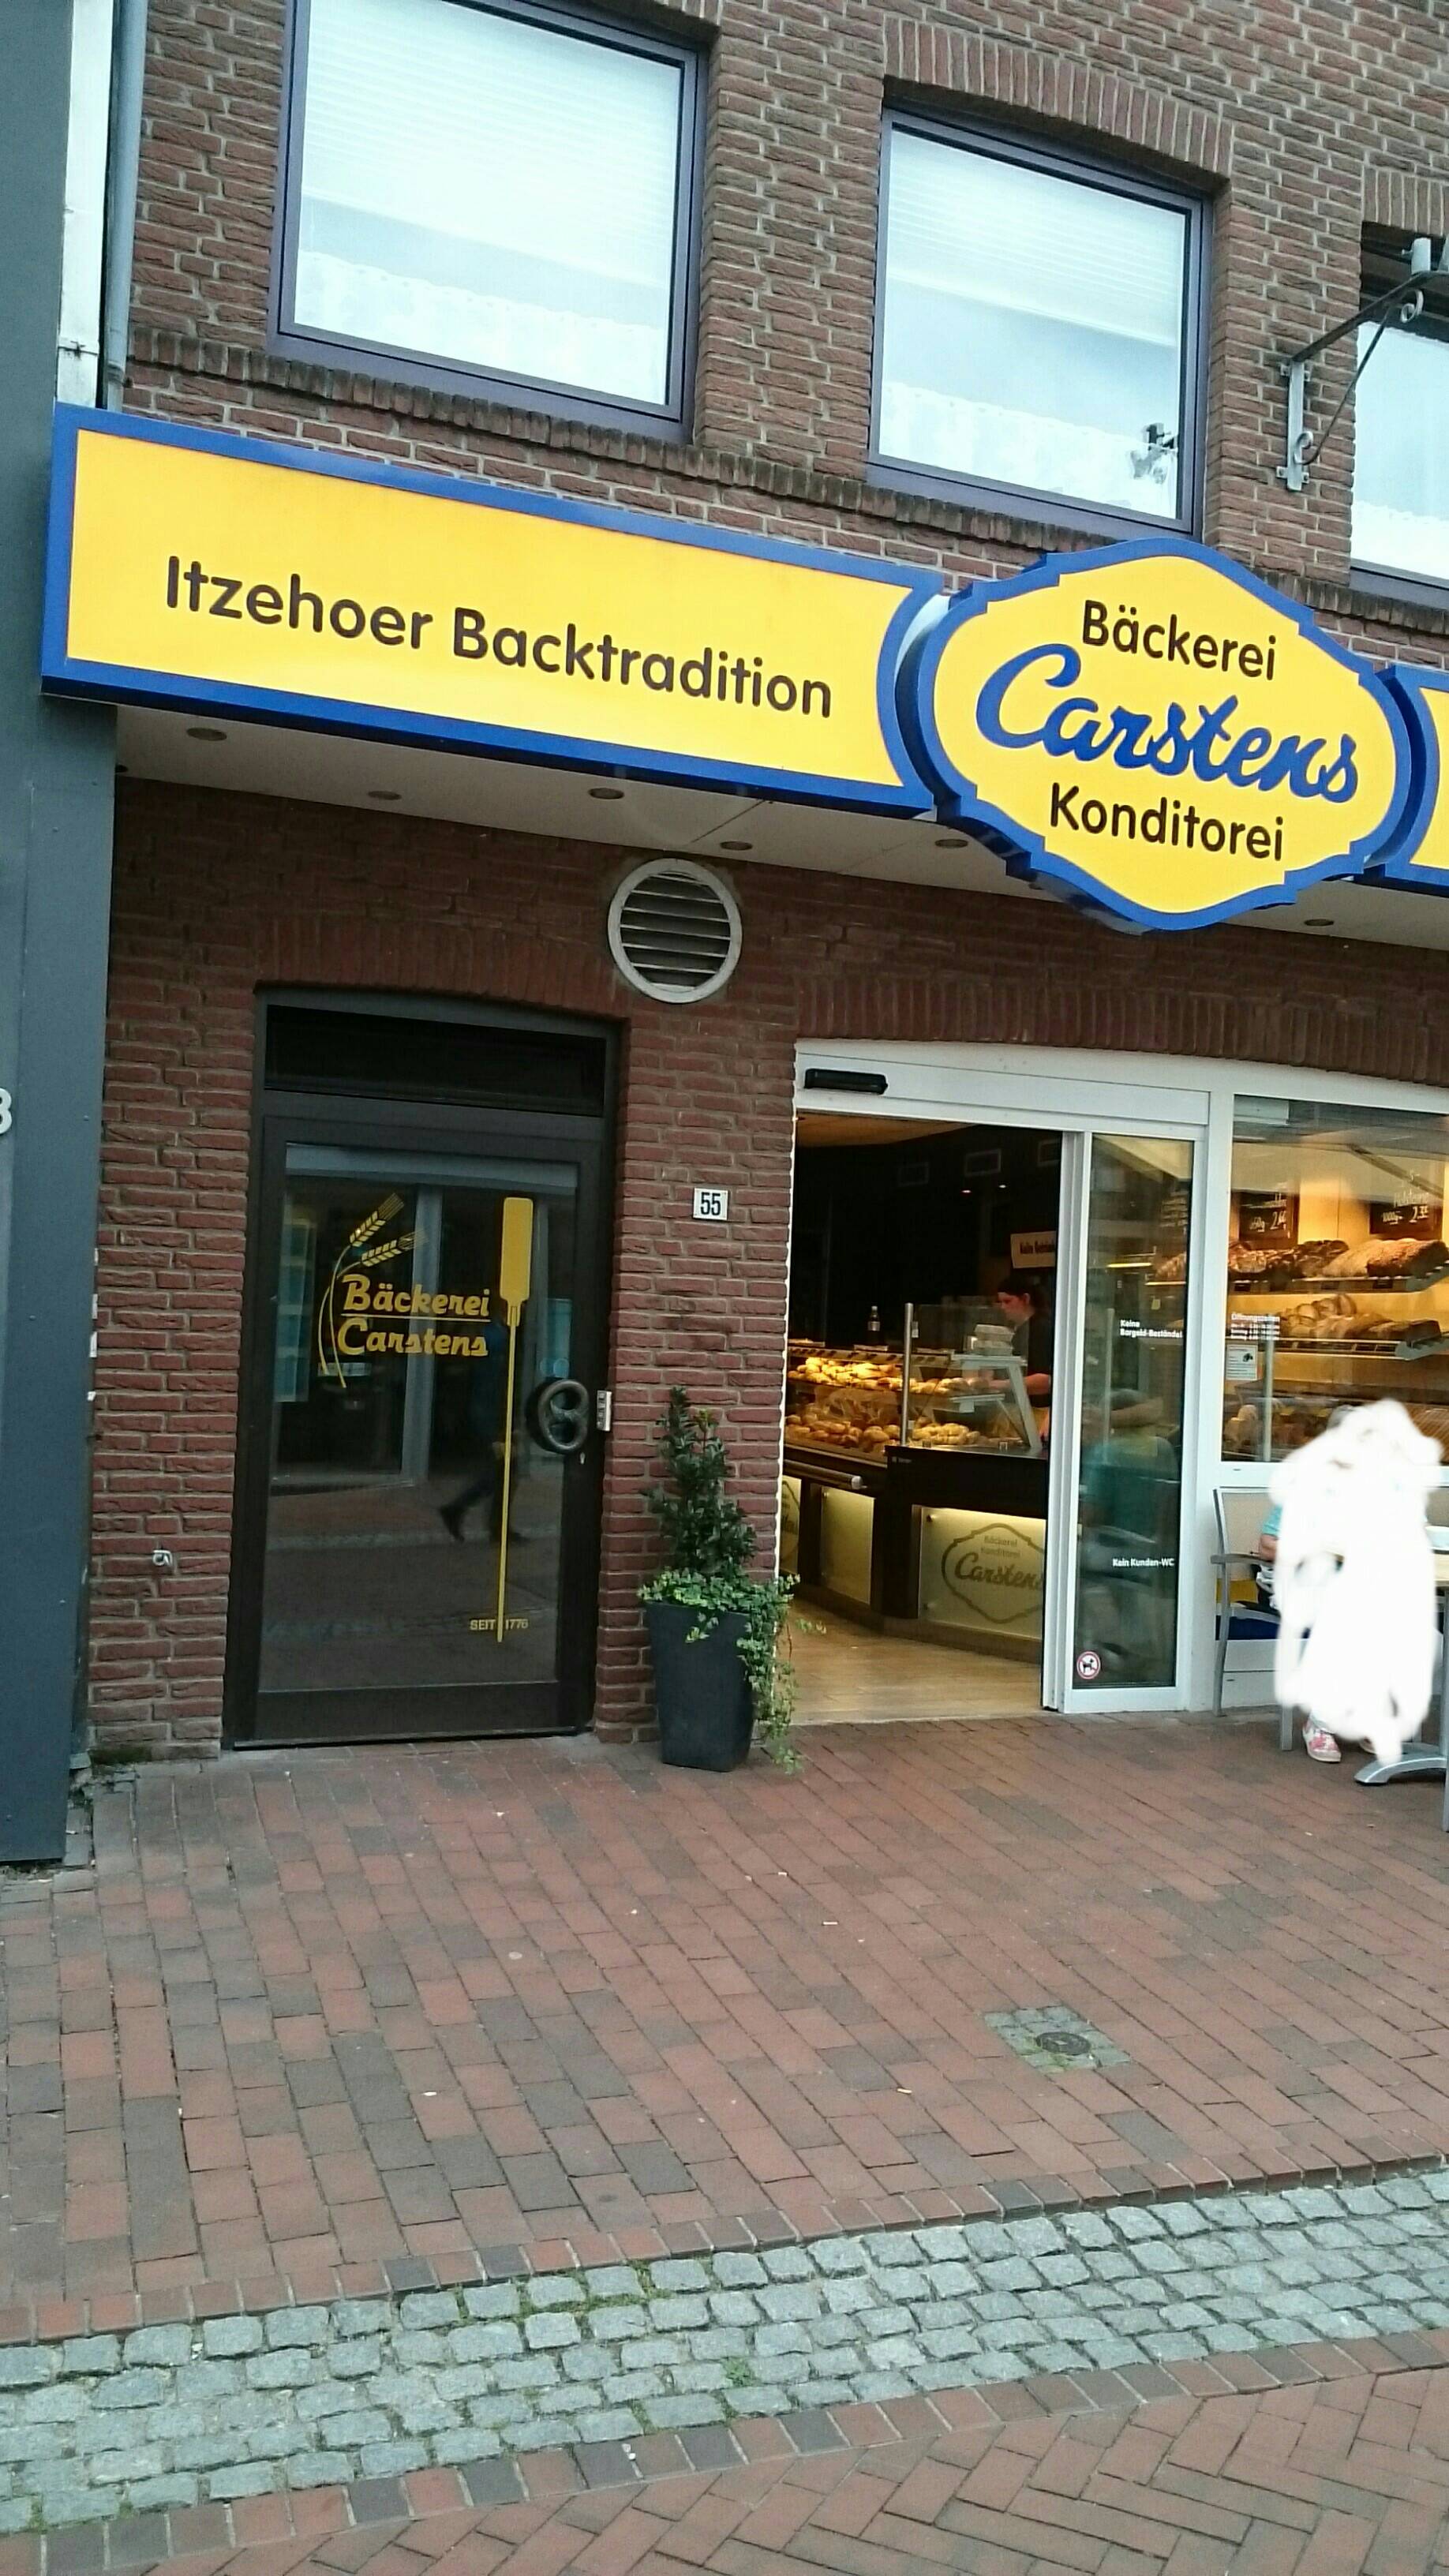 Carstens Bäckerei in Feldschmiede 55 25524 Itzehoe